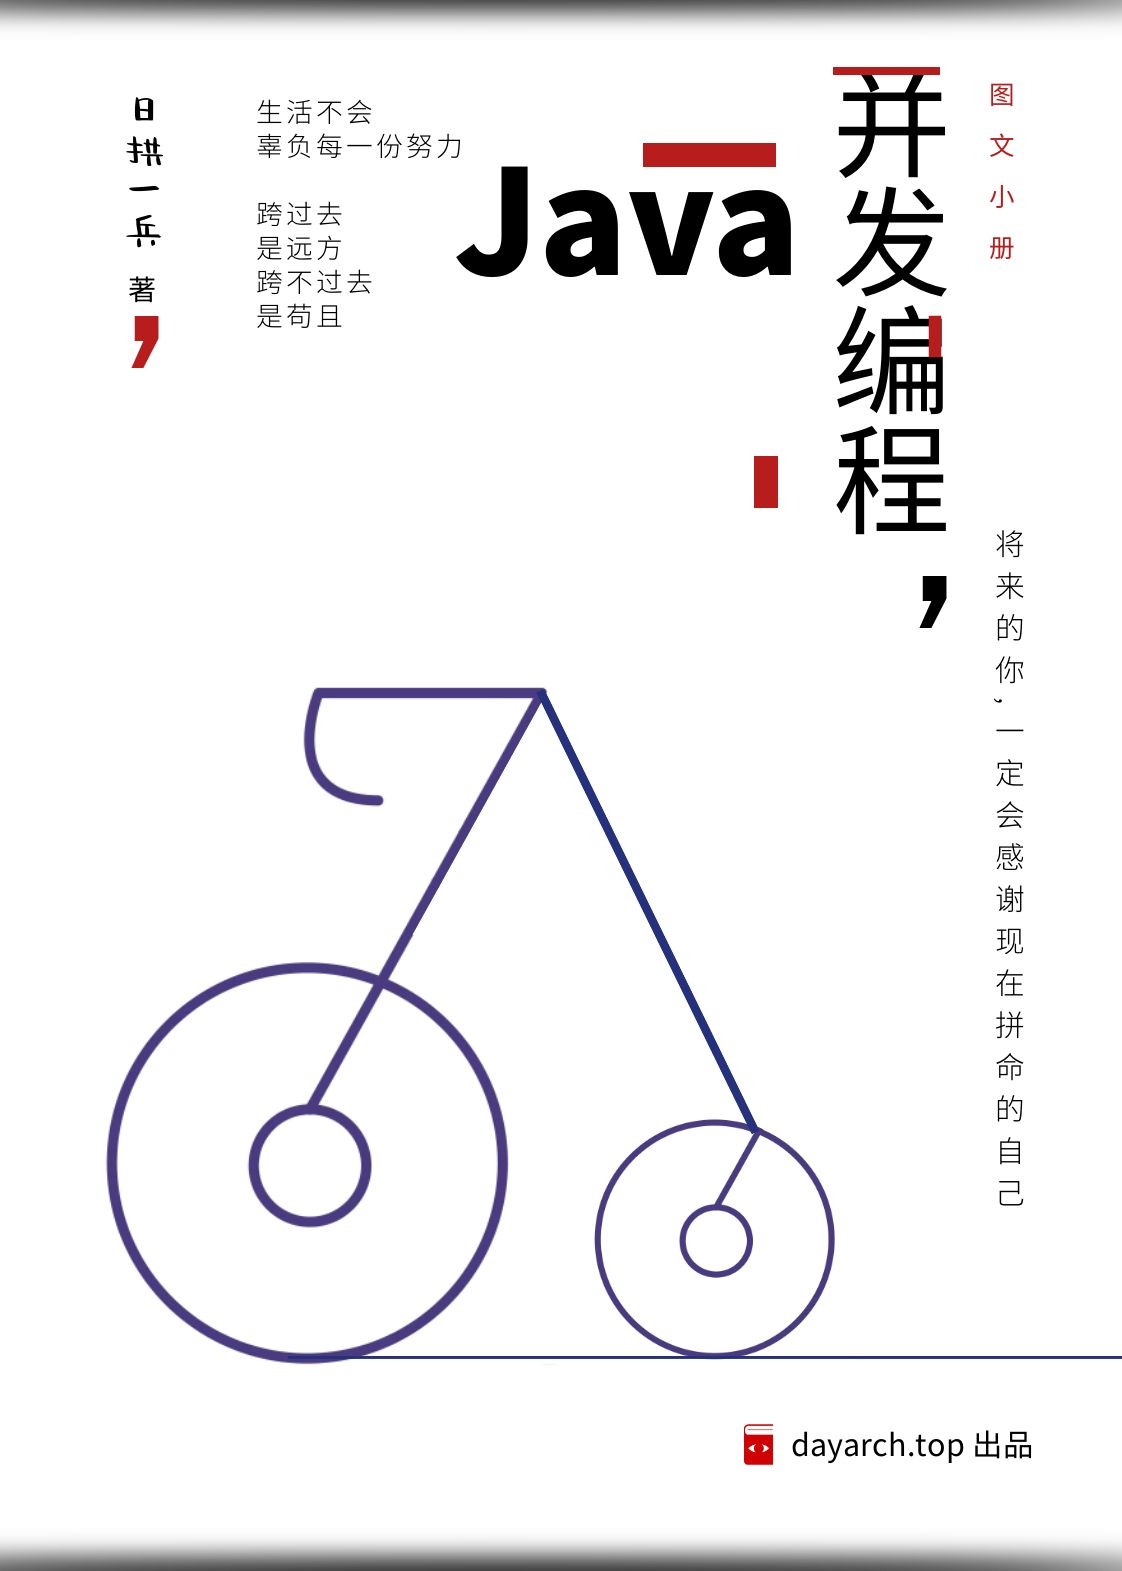 Java 并发编程小册整理好了 - 文章图片